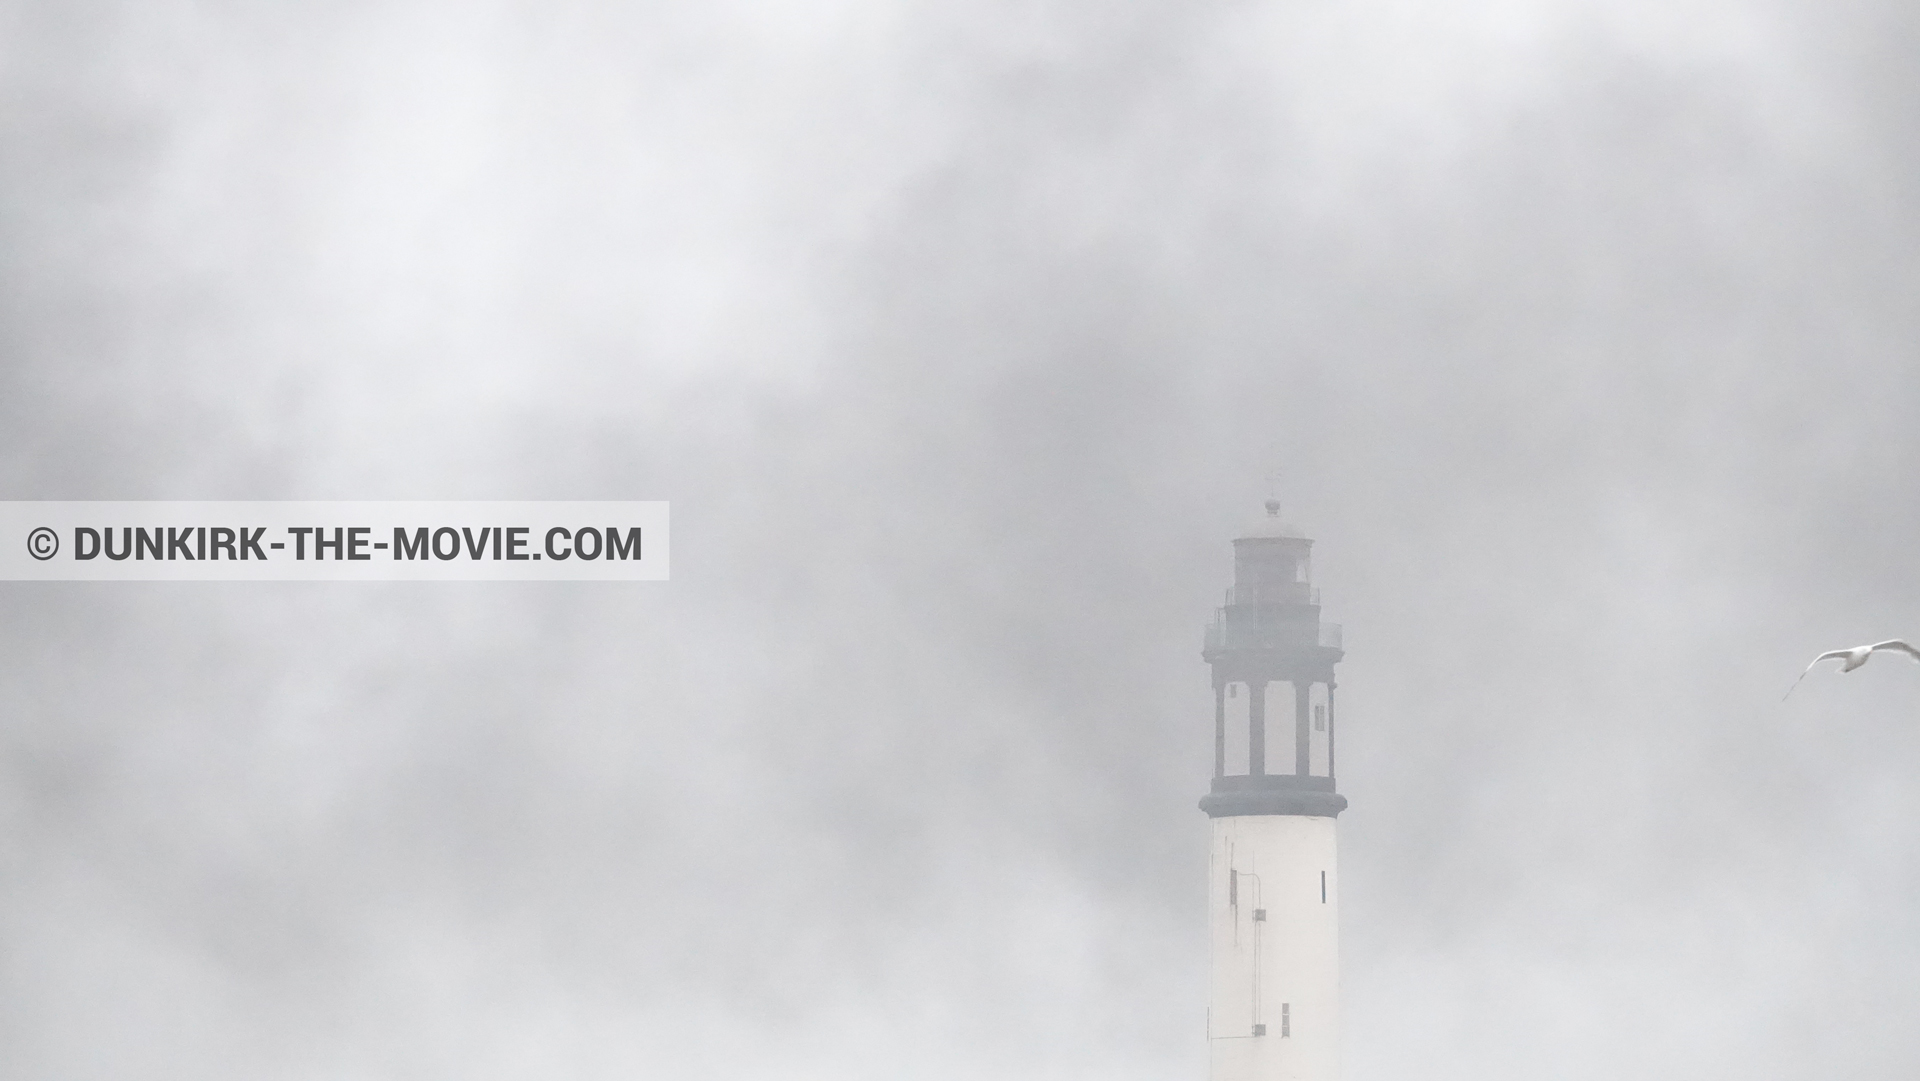 Fotos con humo negro, faro de Dunkerque,  durante el rodaje de la película Dunkerque de Nolan